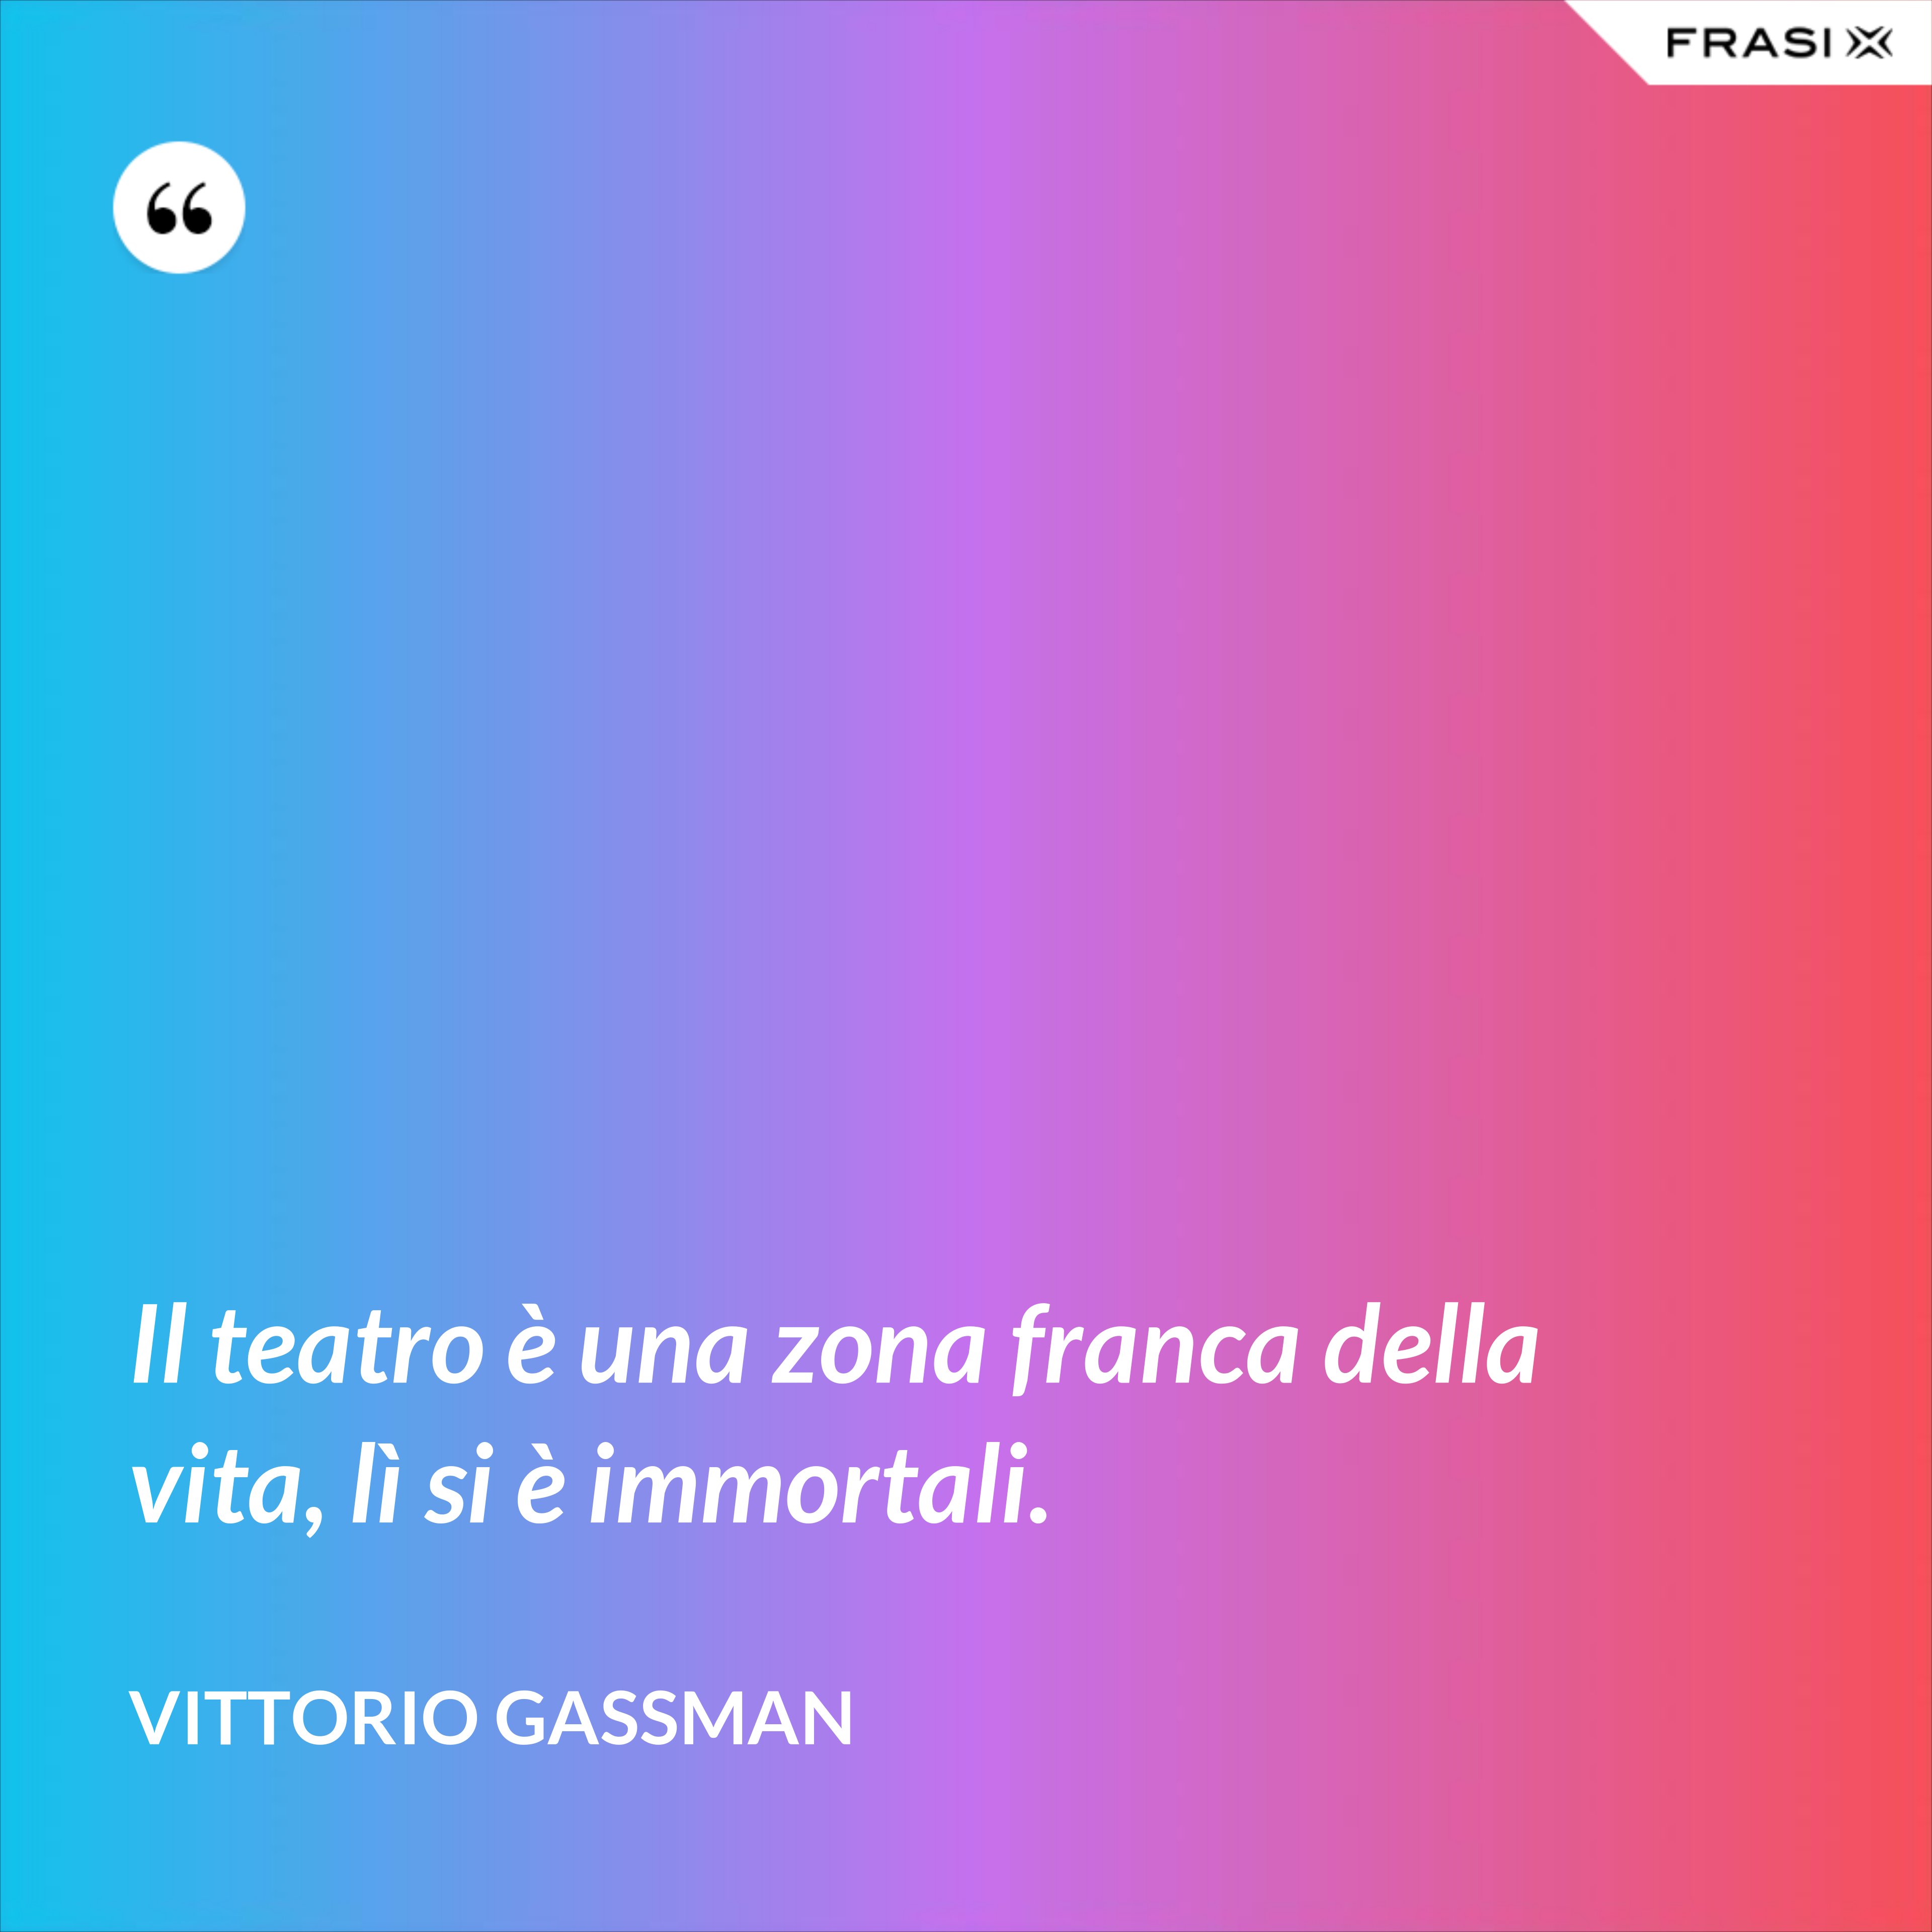 Il teatro è una zona franca della vita, lì si è immortali. - Vittorio Gassman